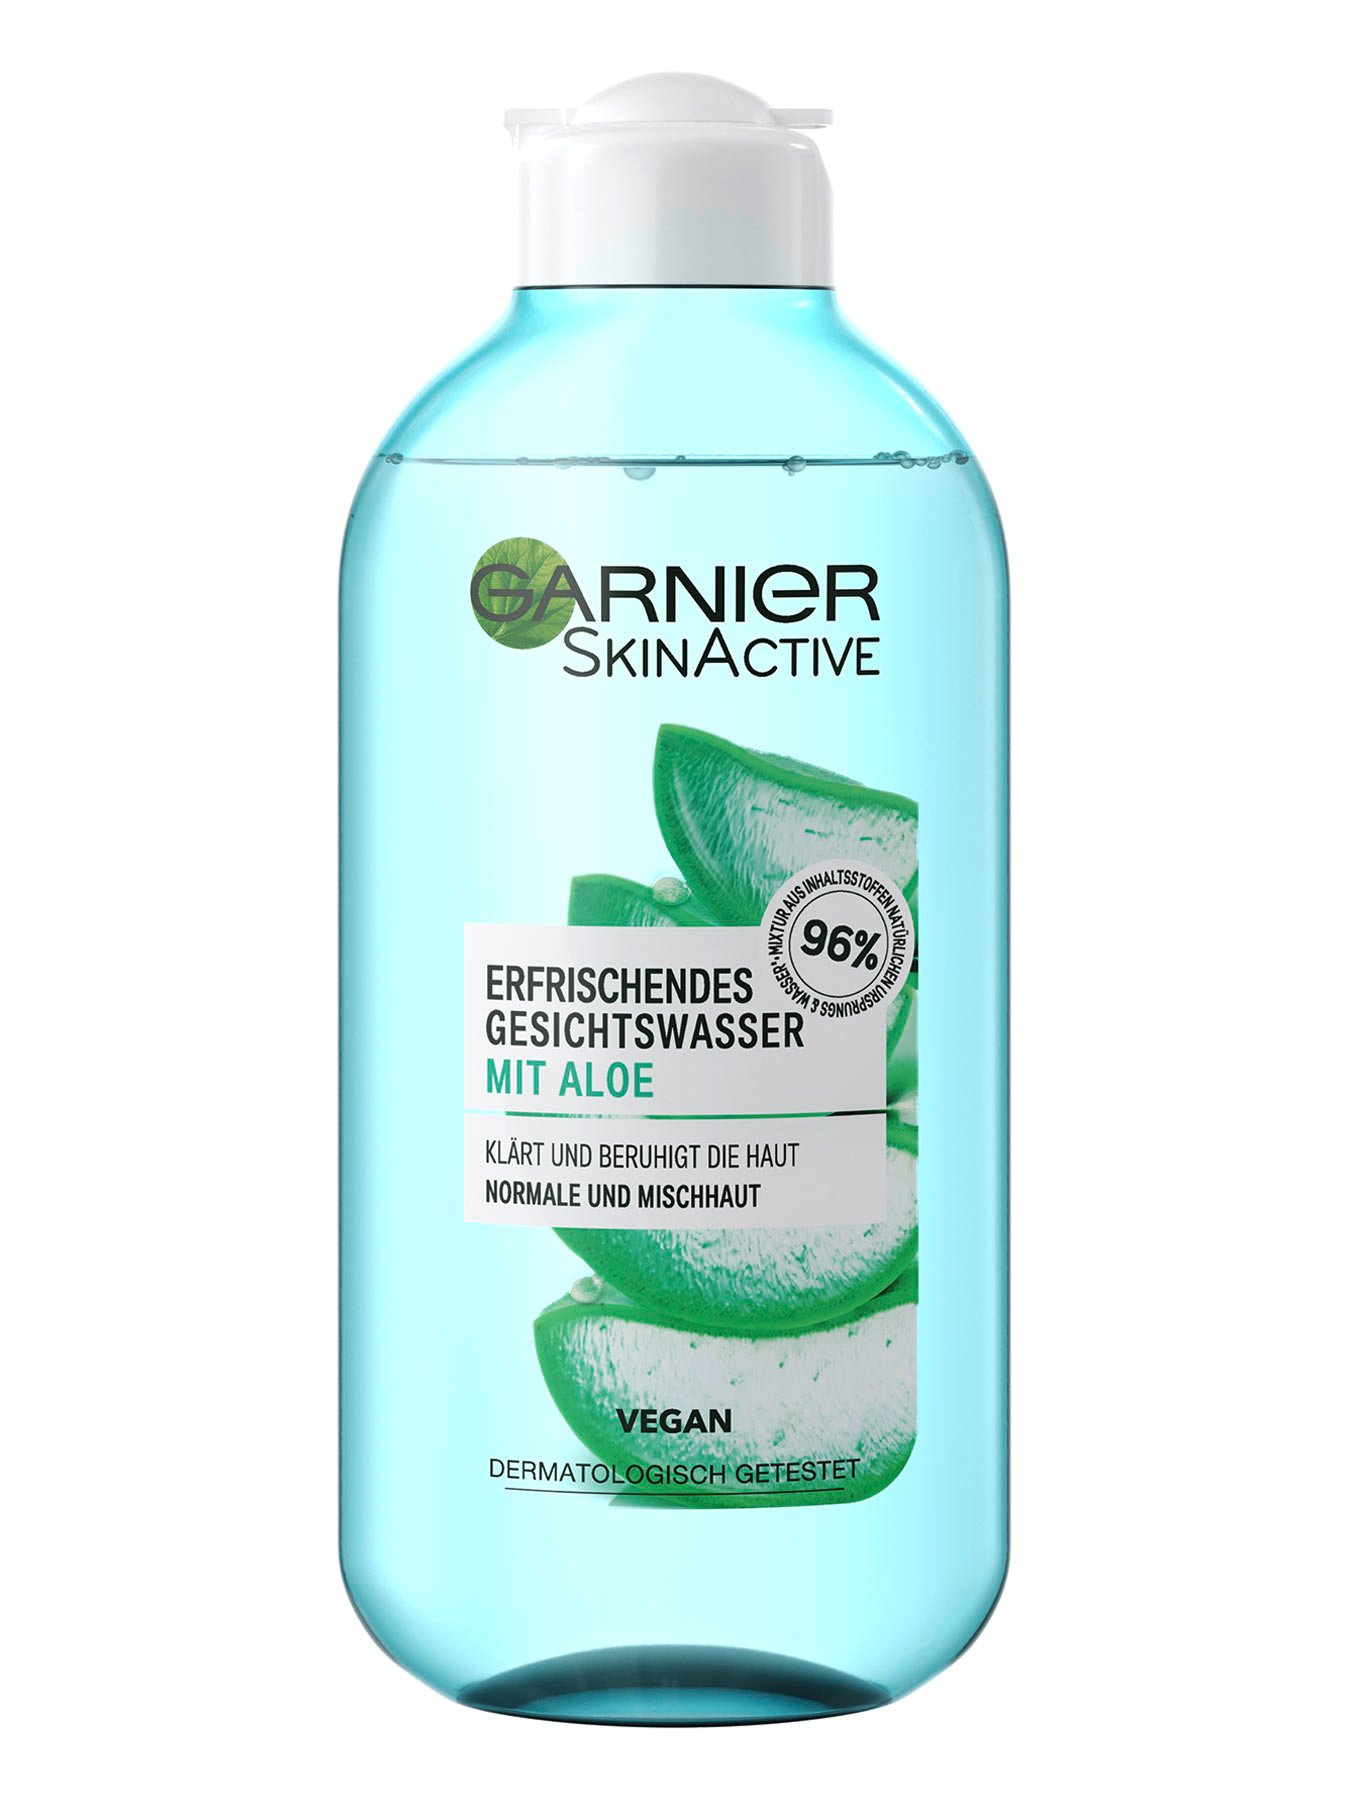 Erfrischendes-Gesichtswasser-mit-Aloe-Extrakt-96-Prozent-200ml-Vorderseite-Garnier-Deutschland-gr